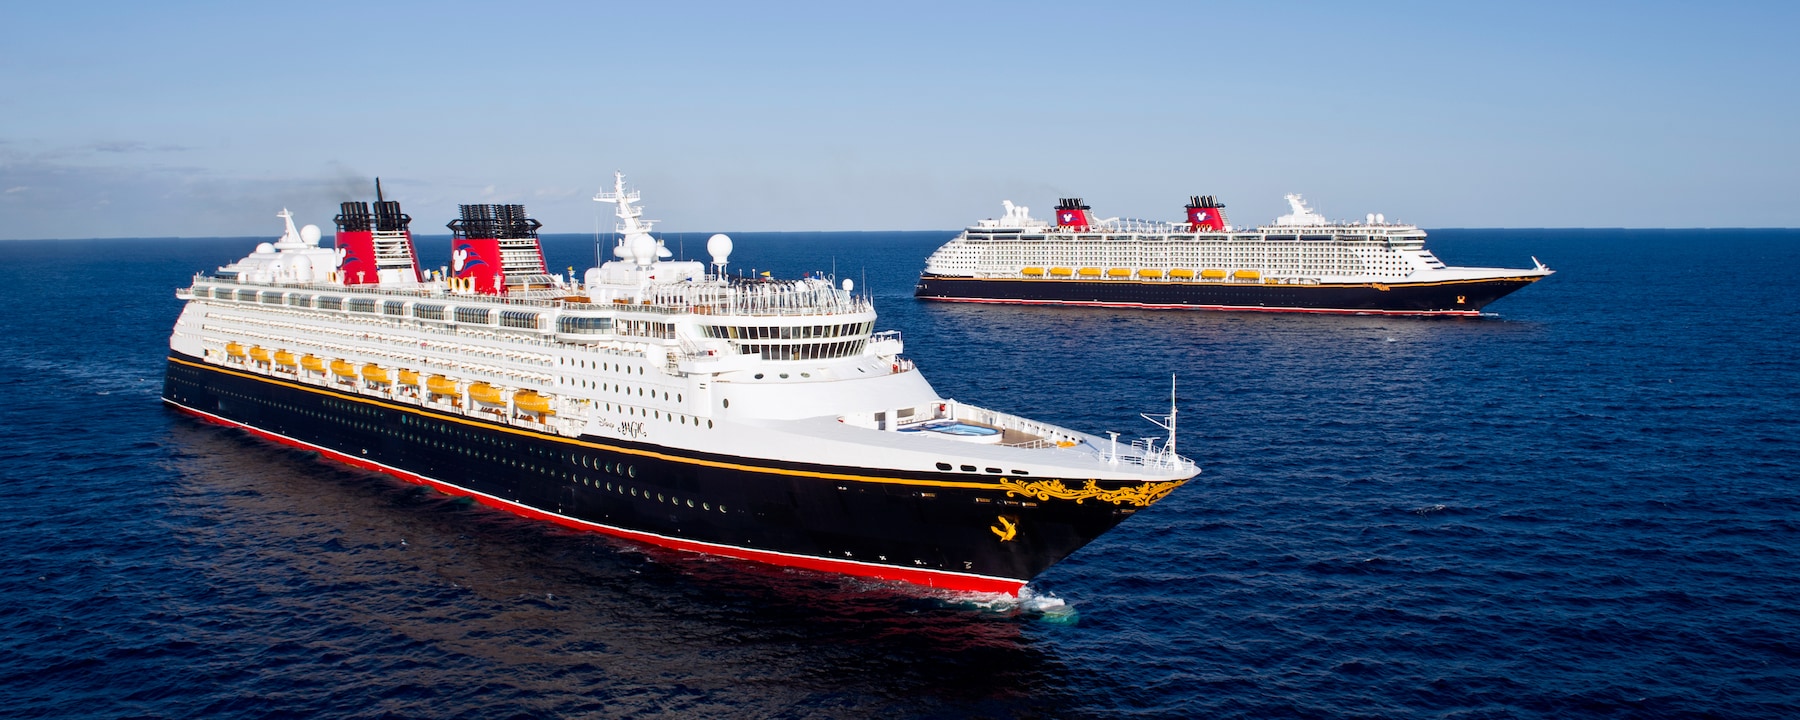 disney cruise ship fleet